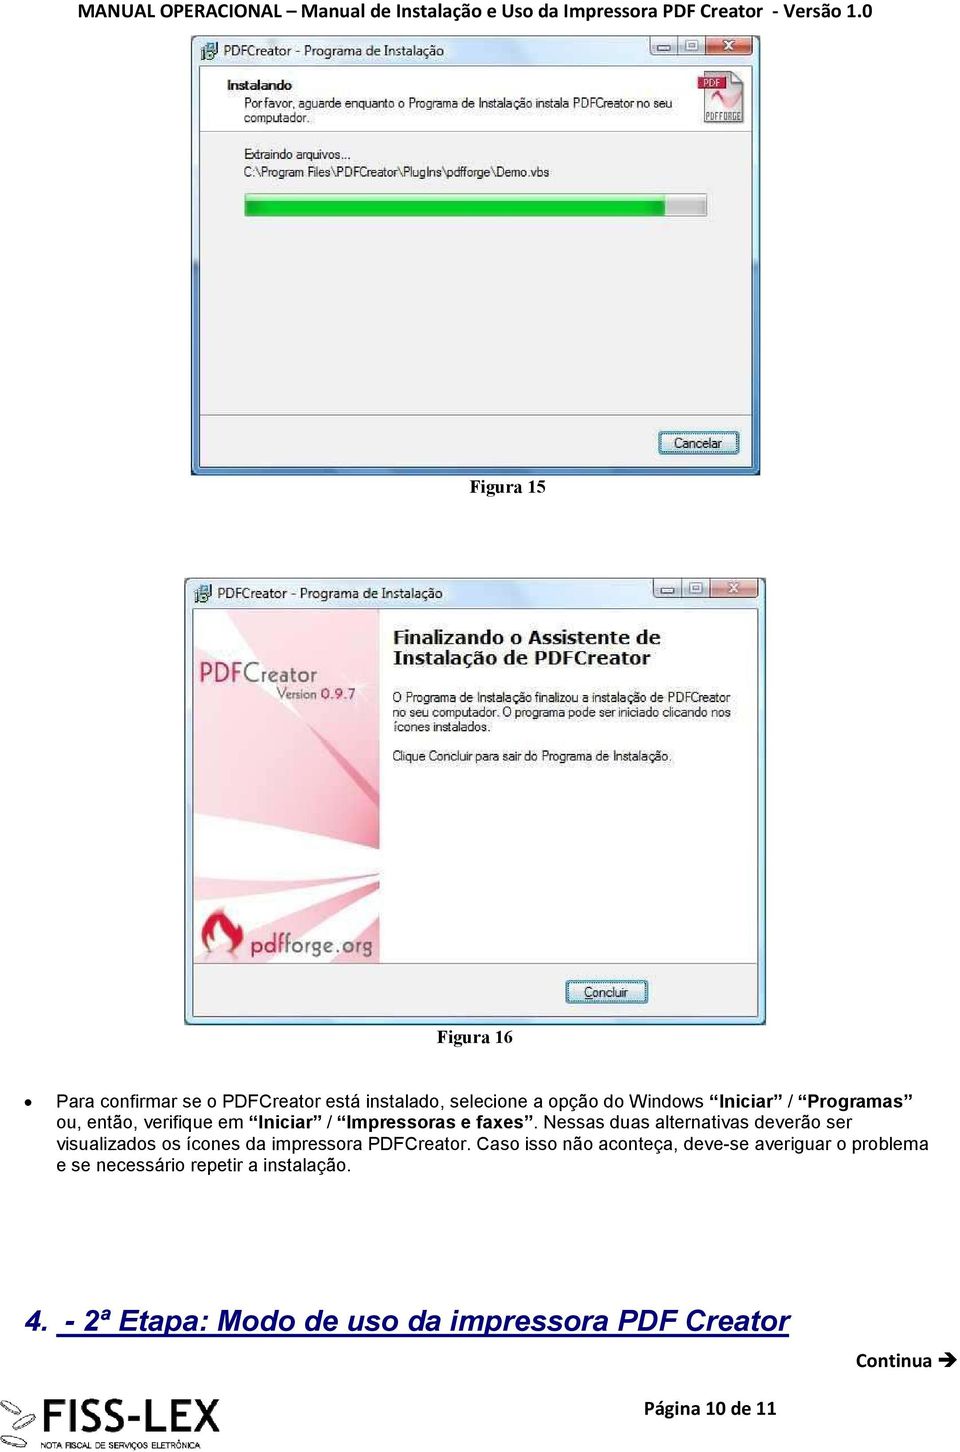 Nessas duas alternativas deverão ser visualizados os ícones da impressora PDFCreator.